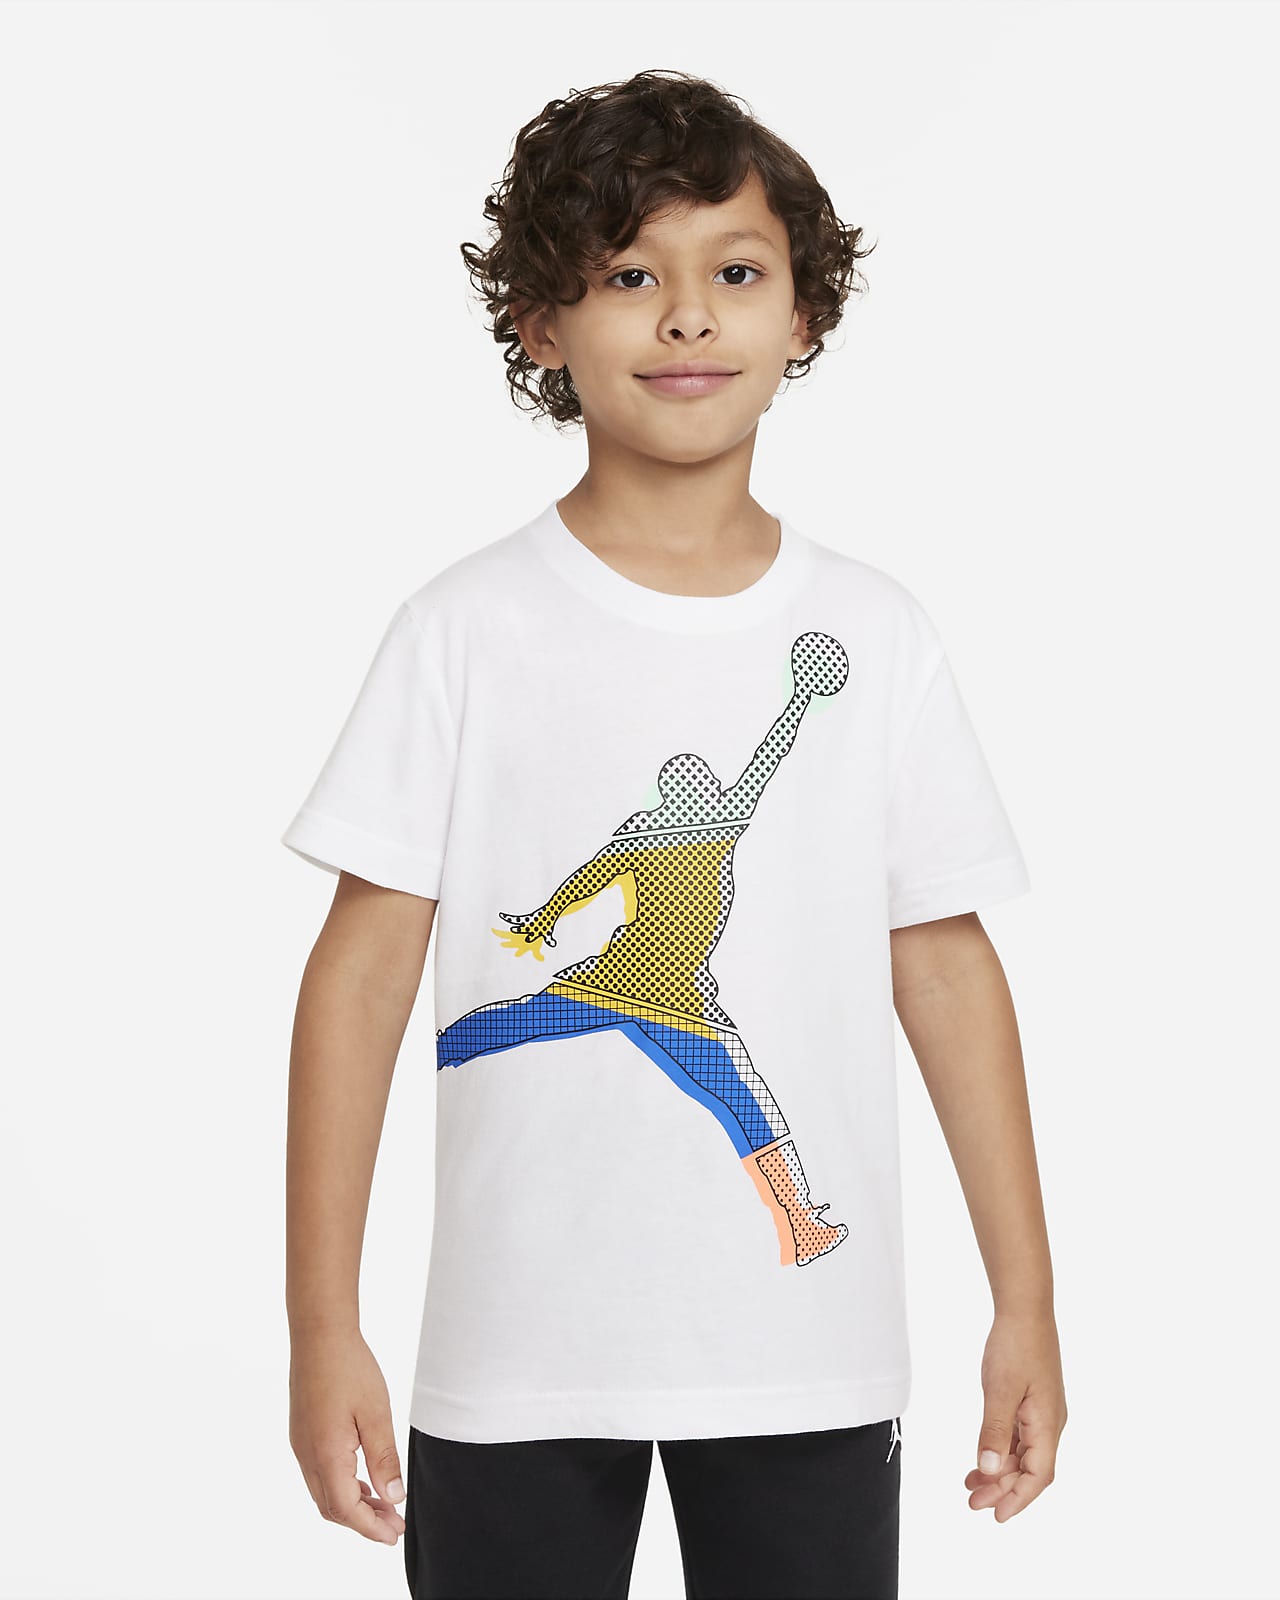 Buy > nike jordan t shirt kids > in stock